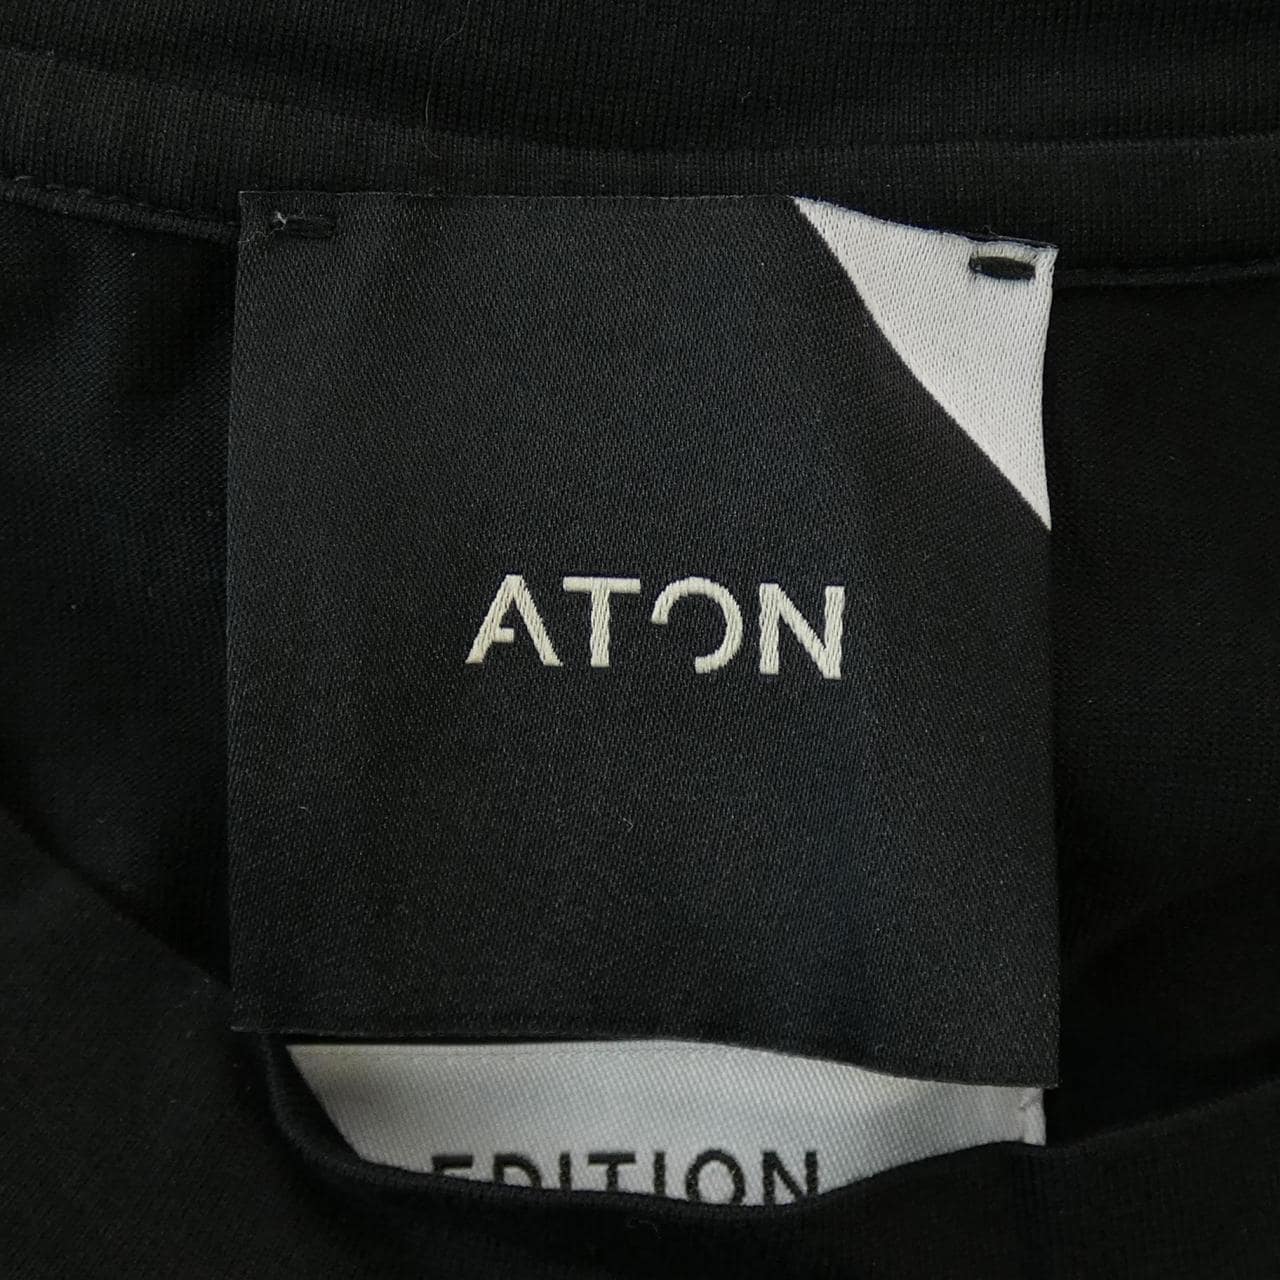 AUTON ATON T恤